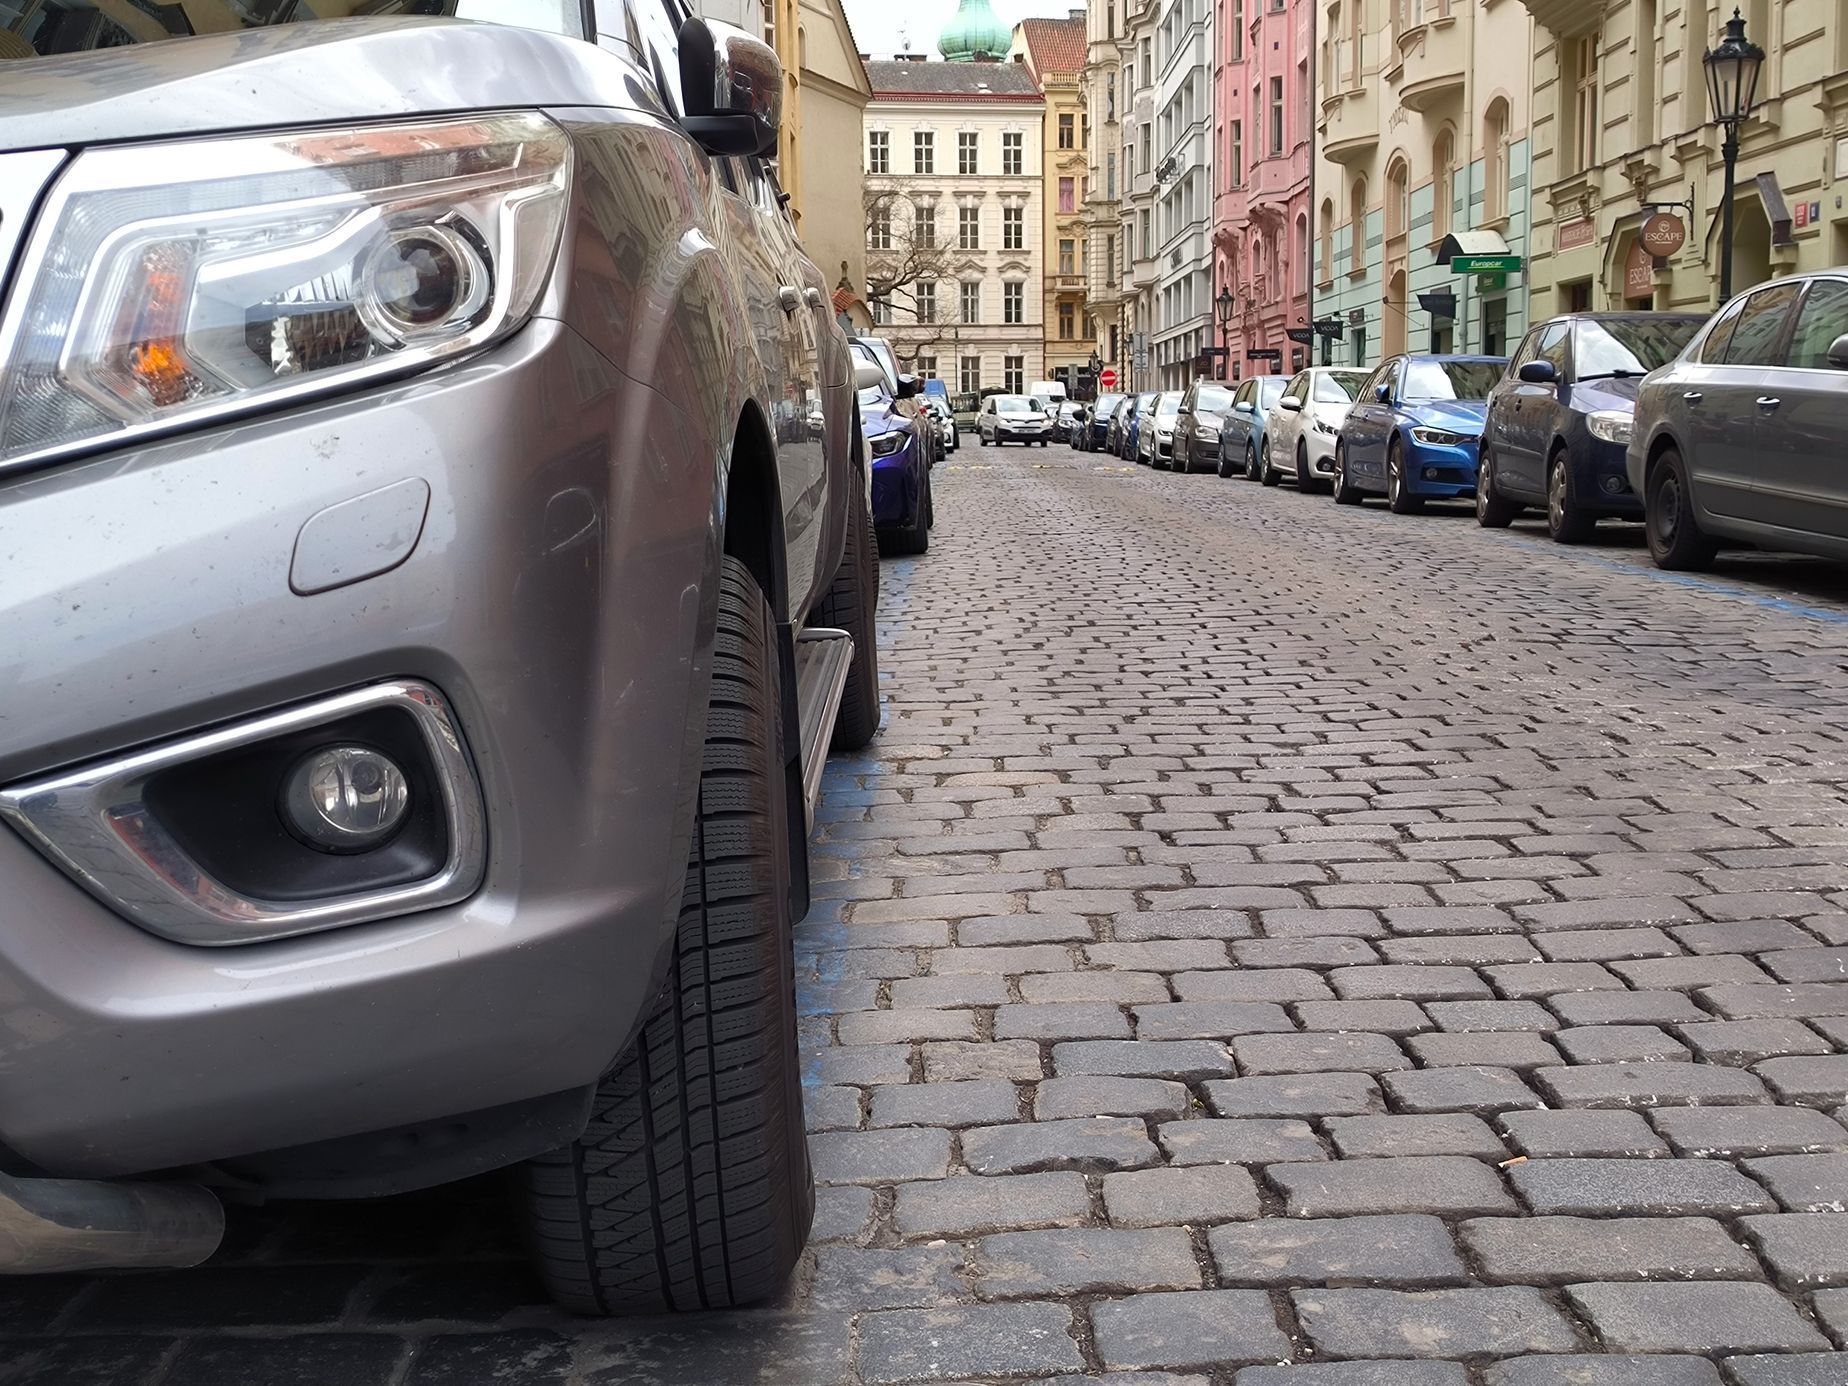 Parkování v Praze 1, šířka parkovacích míst, příliš široká auta